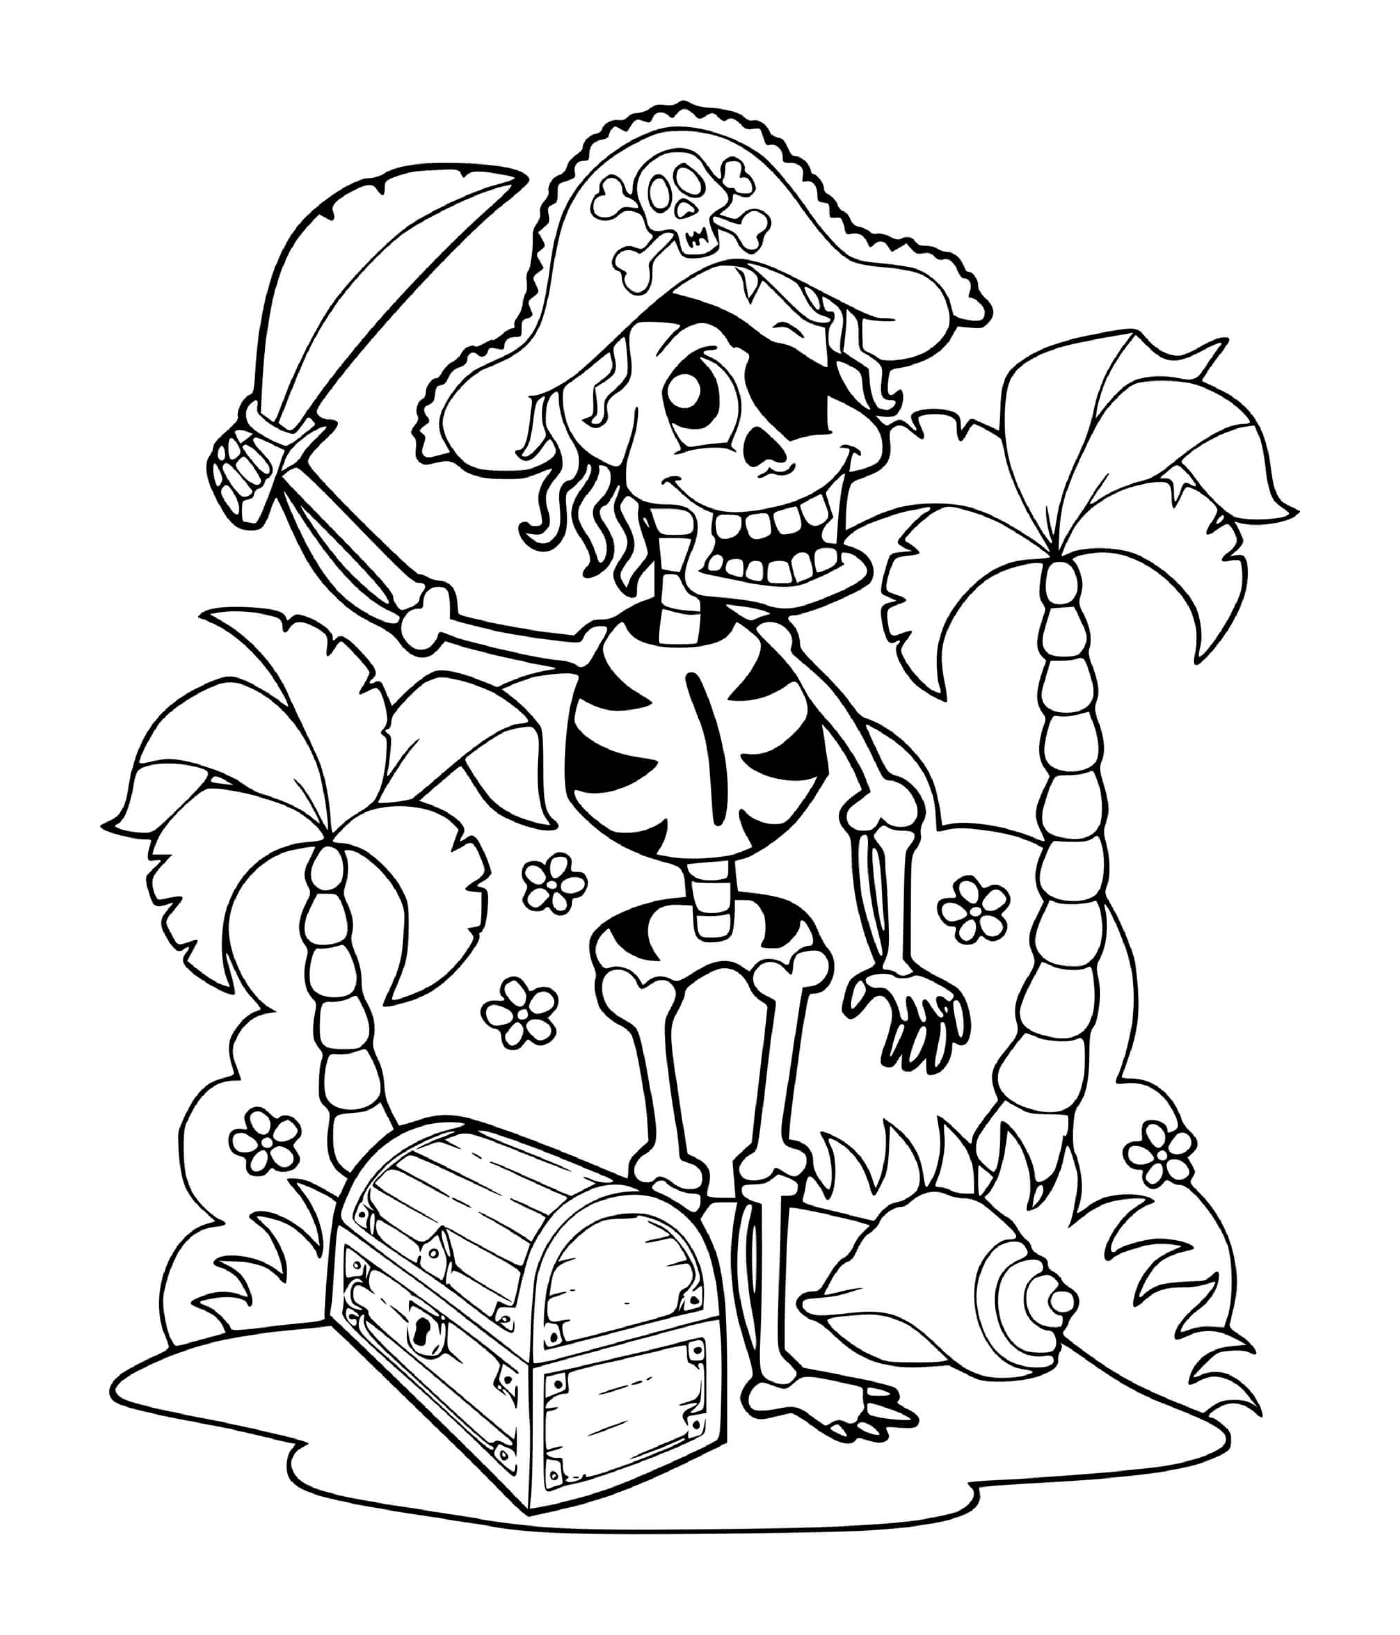   Squelette pirate avec trésor 